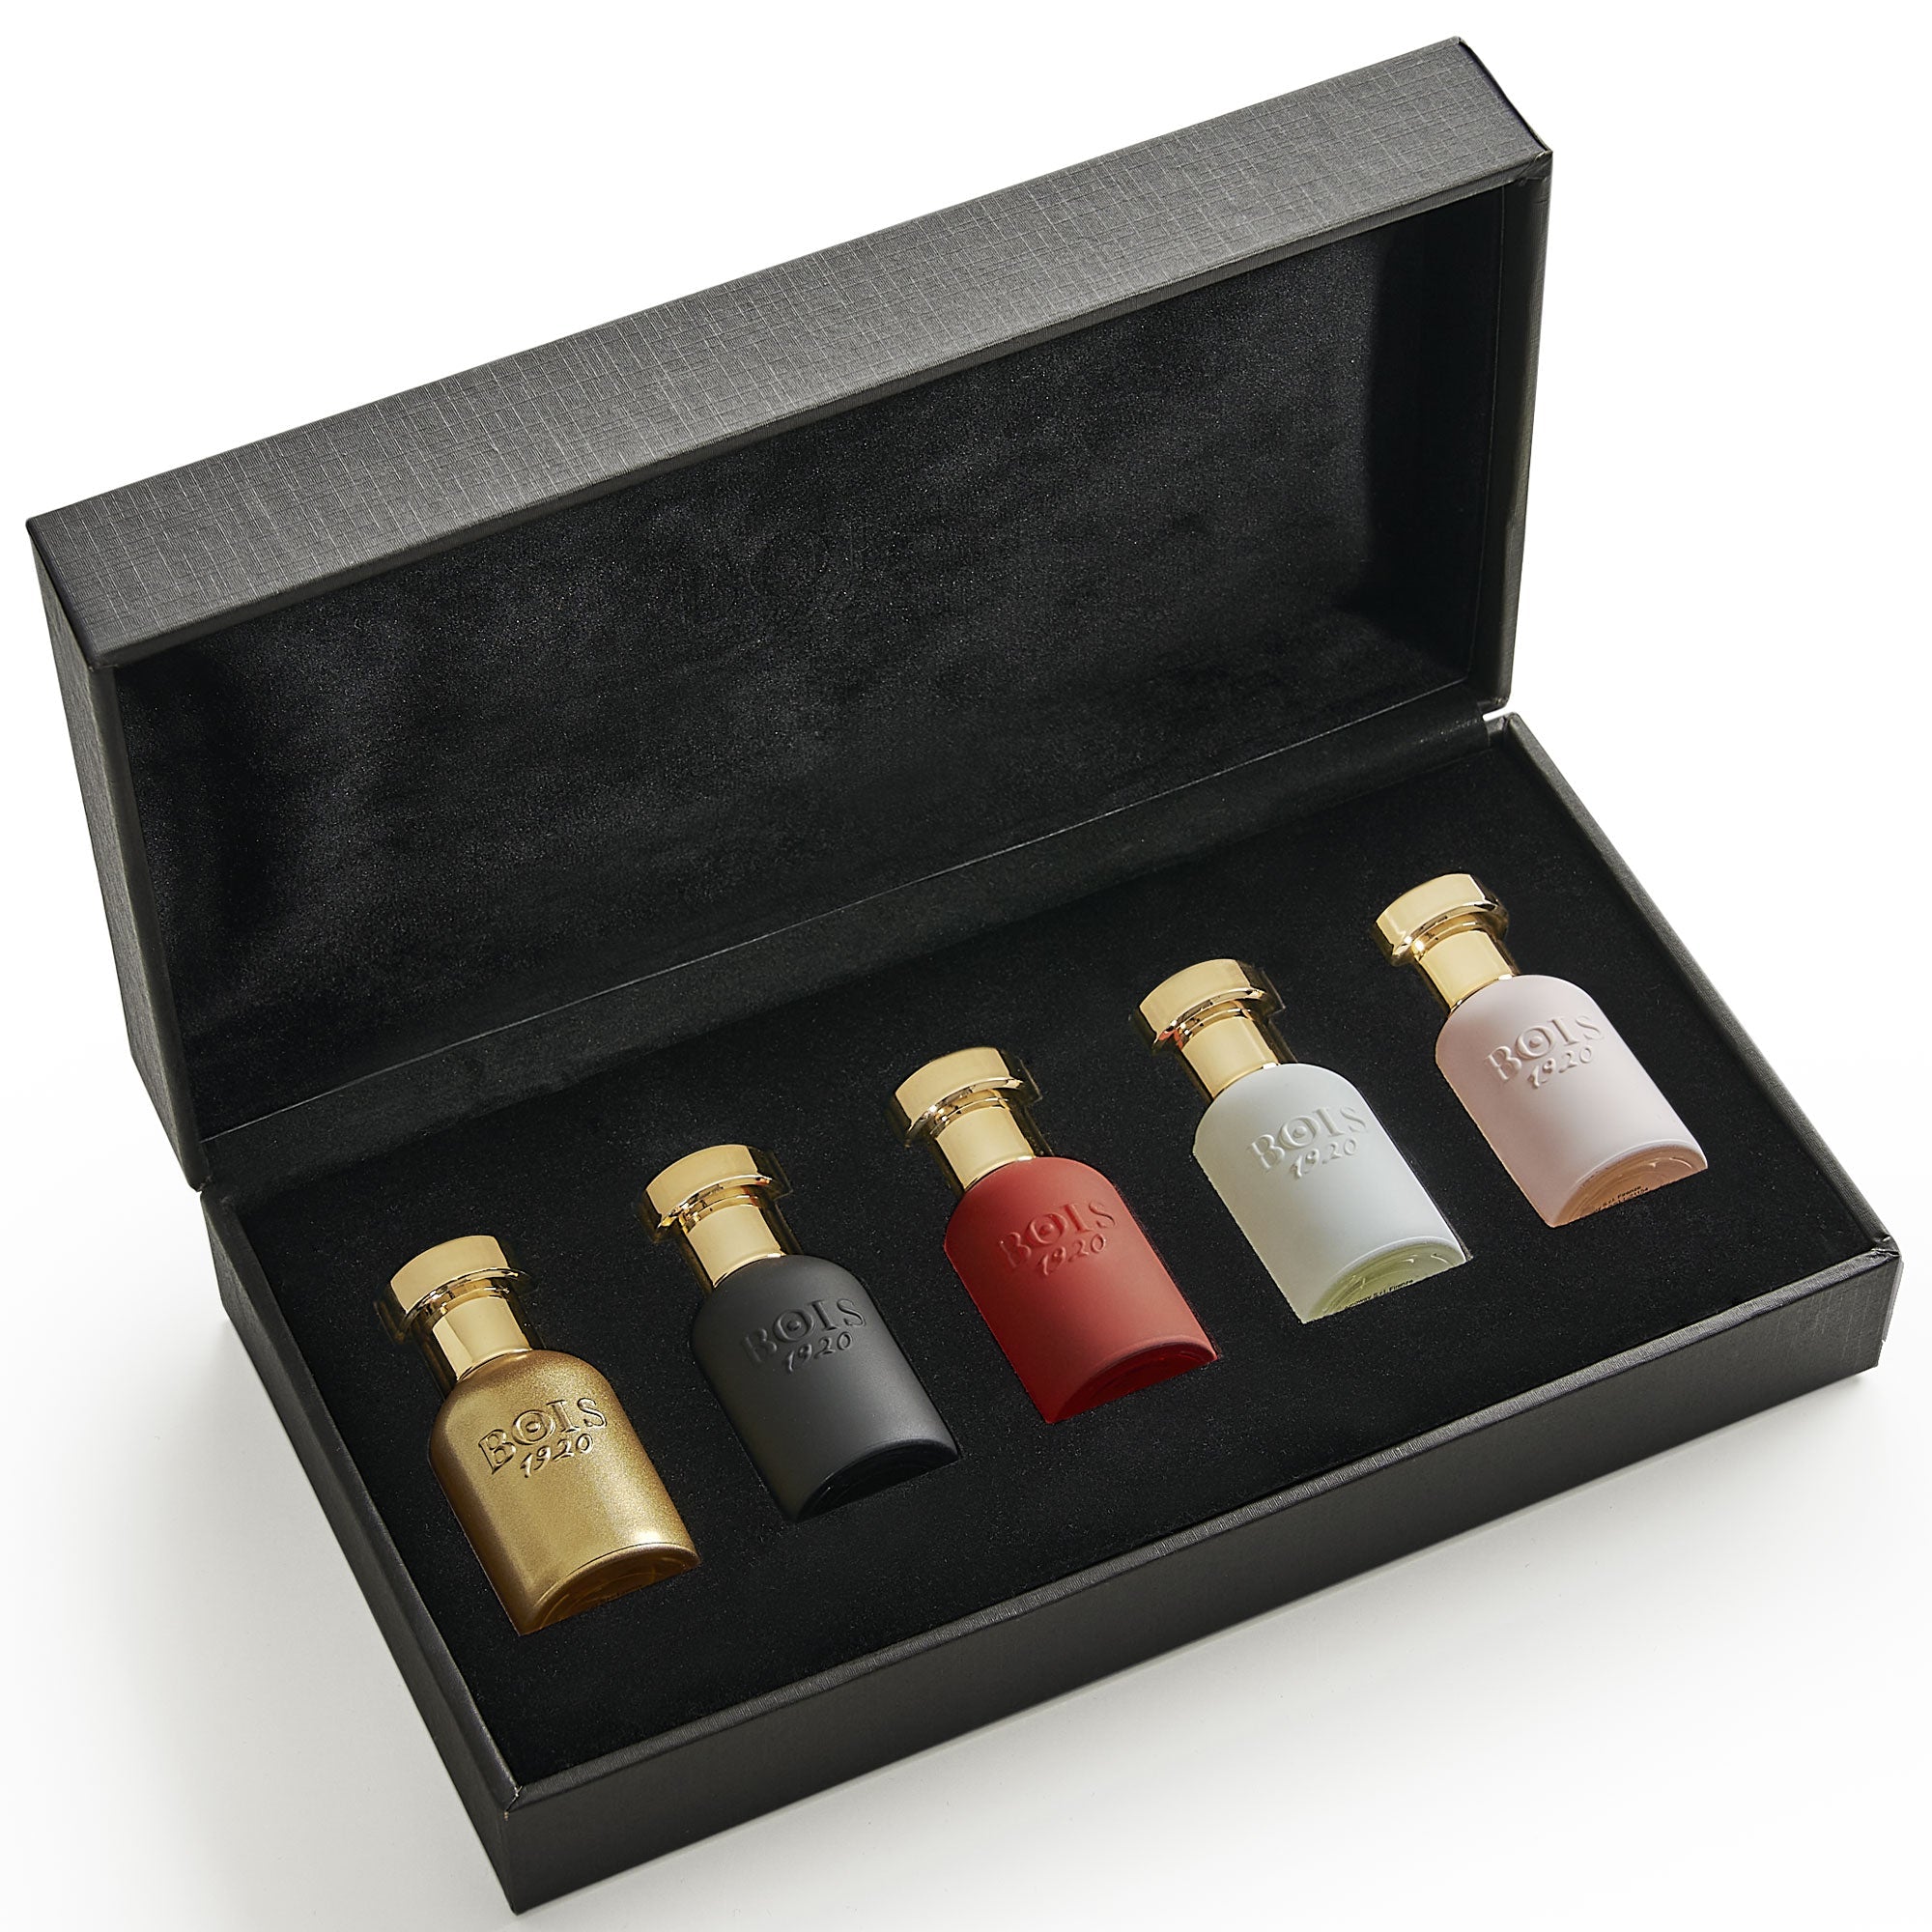 Bois 1920 Durocaffe Extrait De Parfum | My Perfume Shop Australia